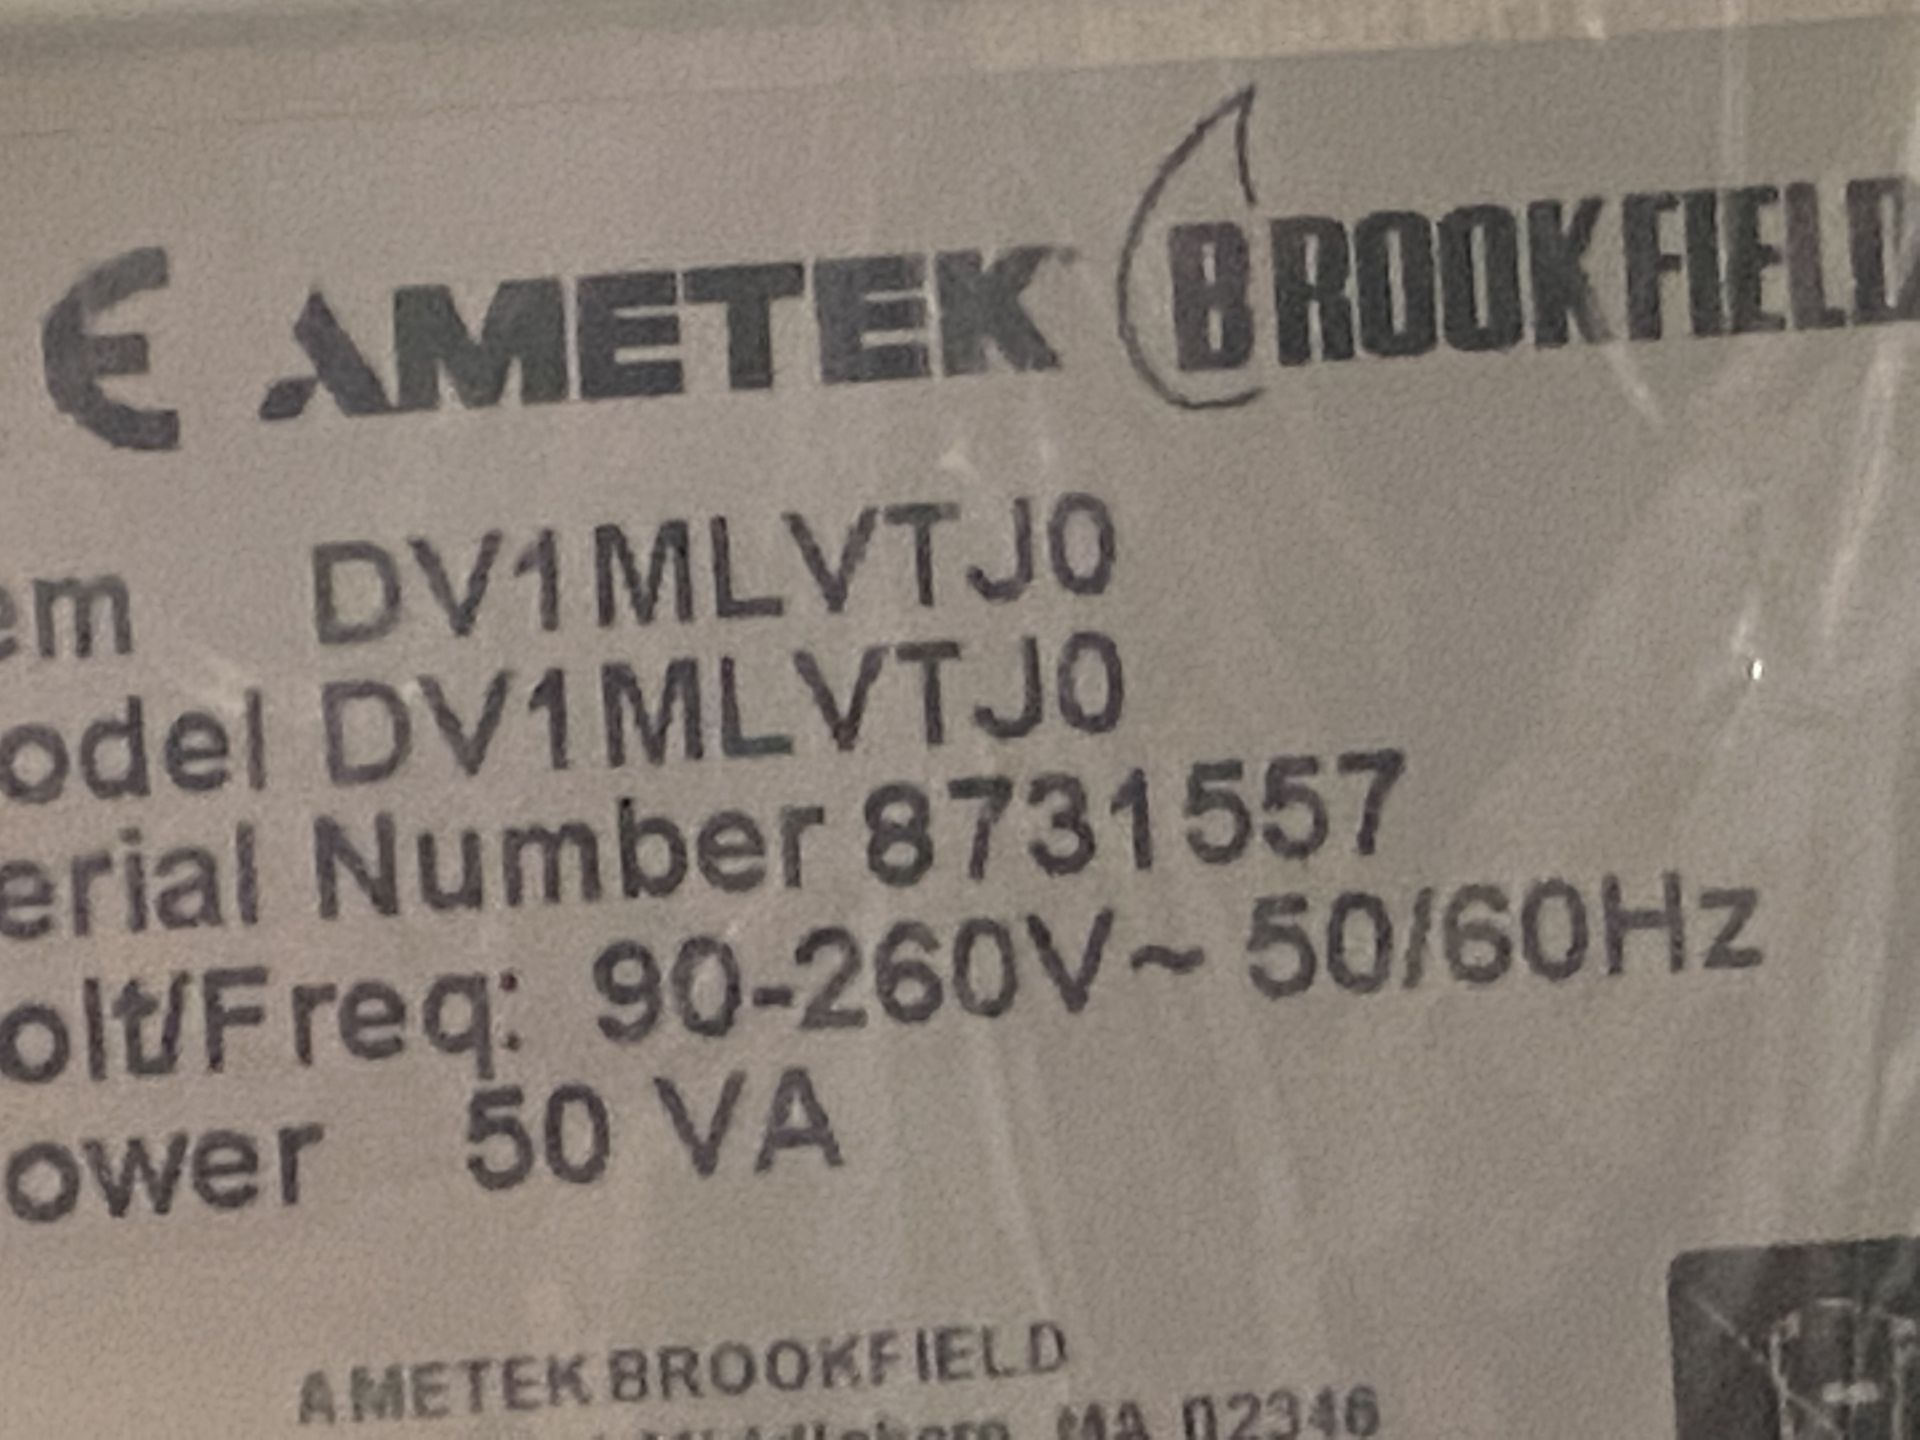 New Unused Brookfield AMETEK DV1 Digital Viscometer. Model DV-1MLVT. - Image 8 of 14